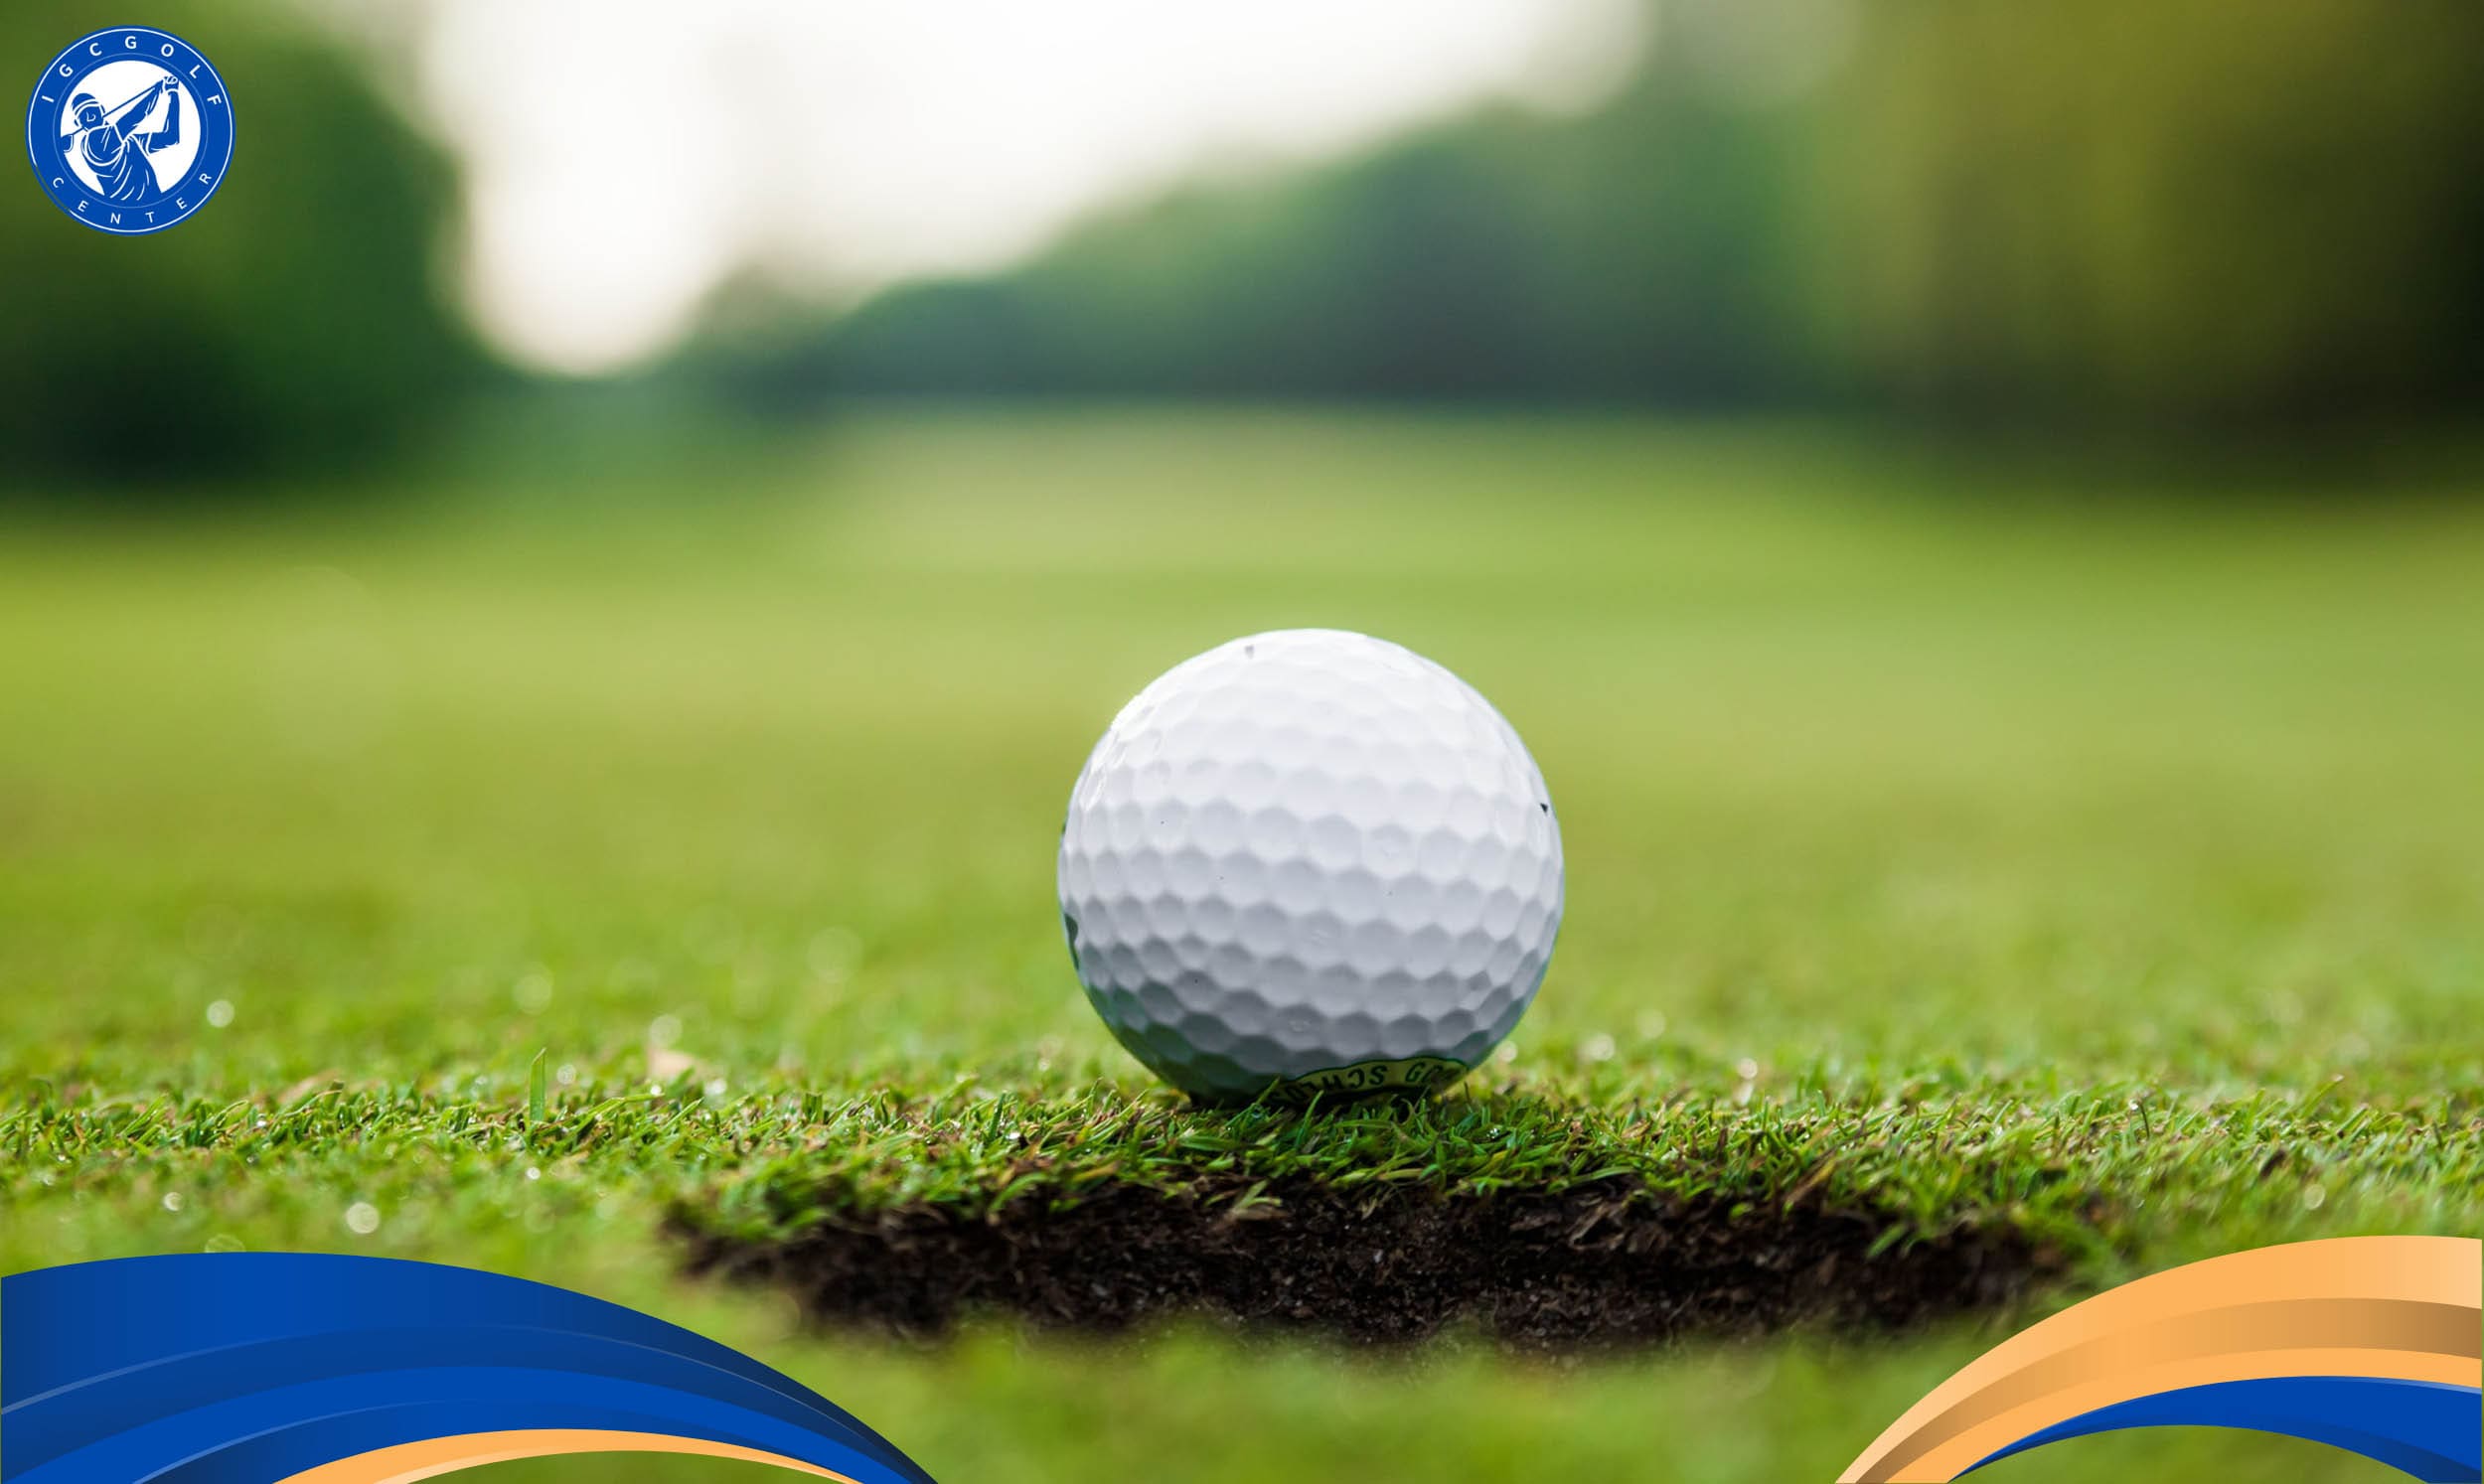 Học đánh golf ở quận Gò Vấp tại IGC Golf Center sẽ có những lợi ích gì?